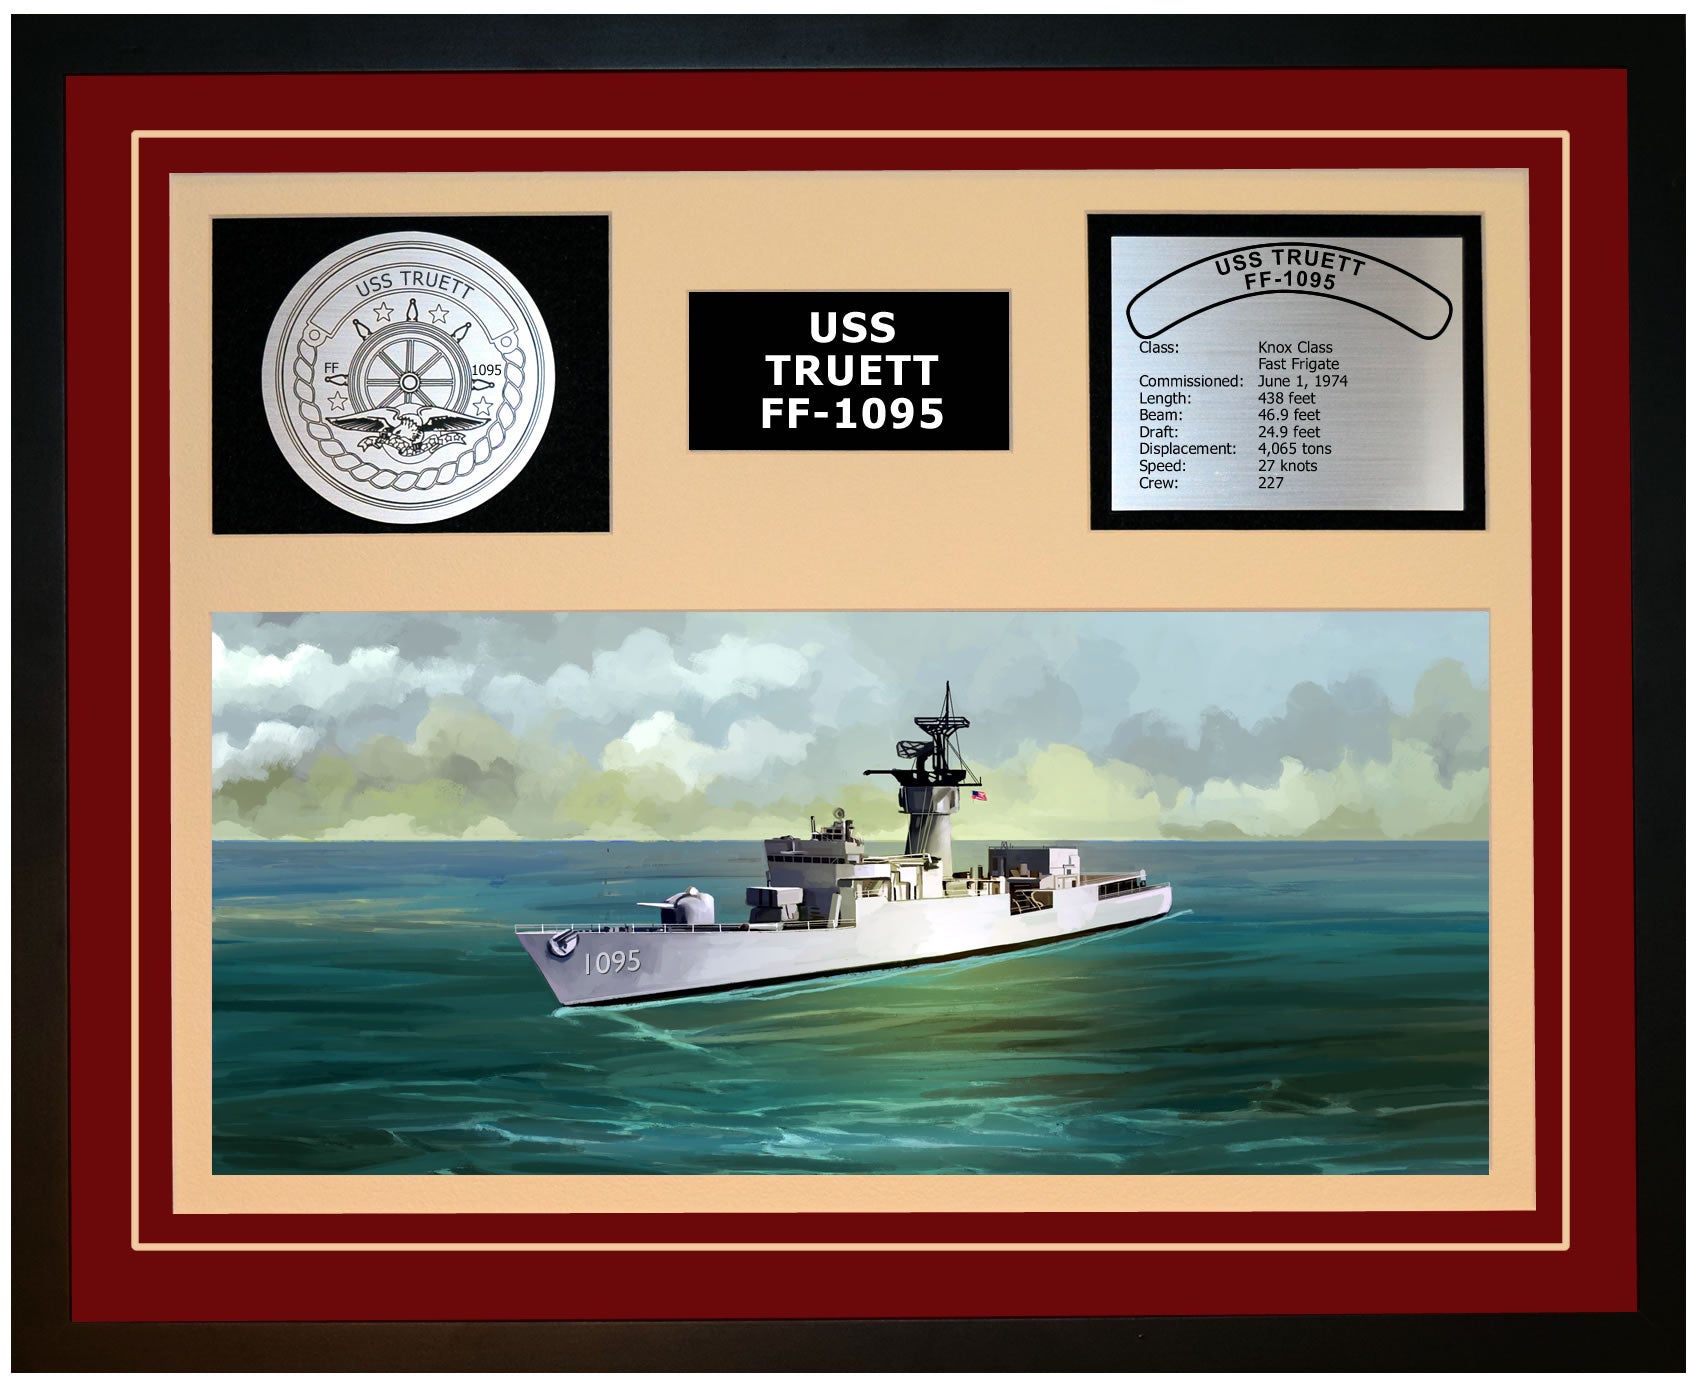 USS TRUETT FF-1095 Framed Navy Ship Display Burgundy